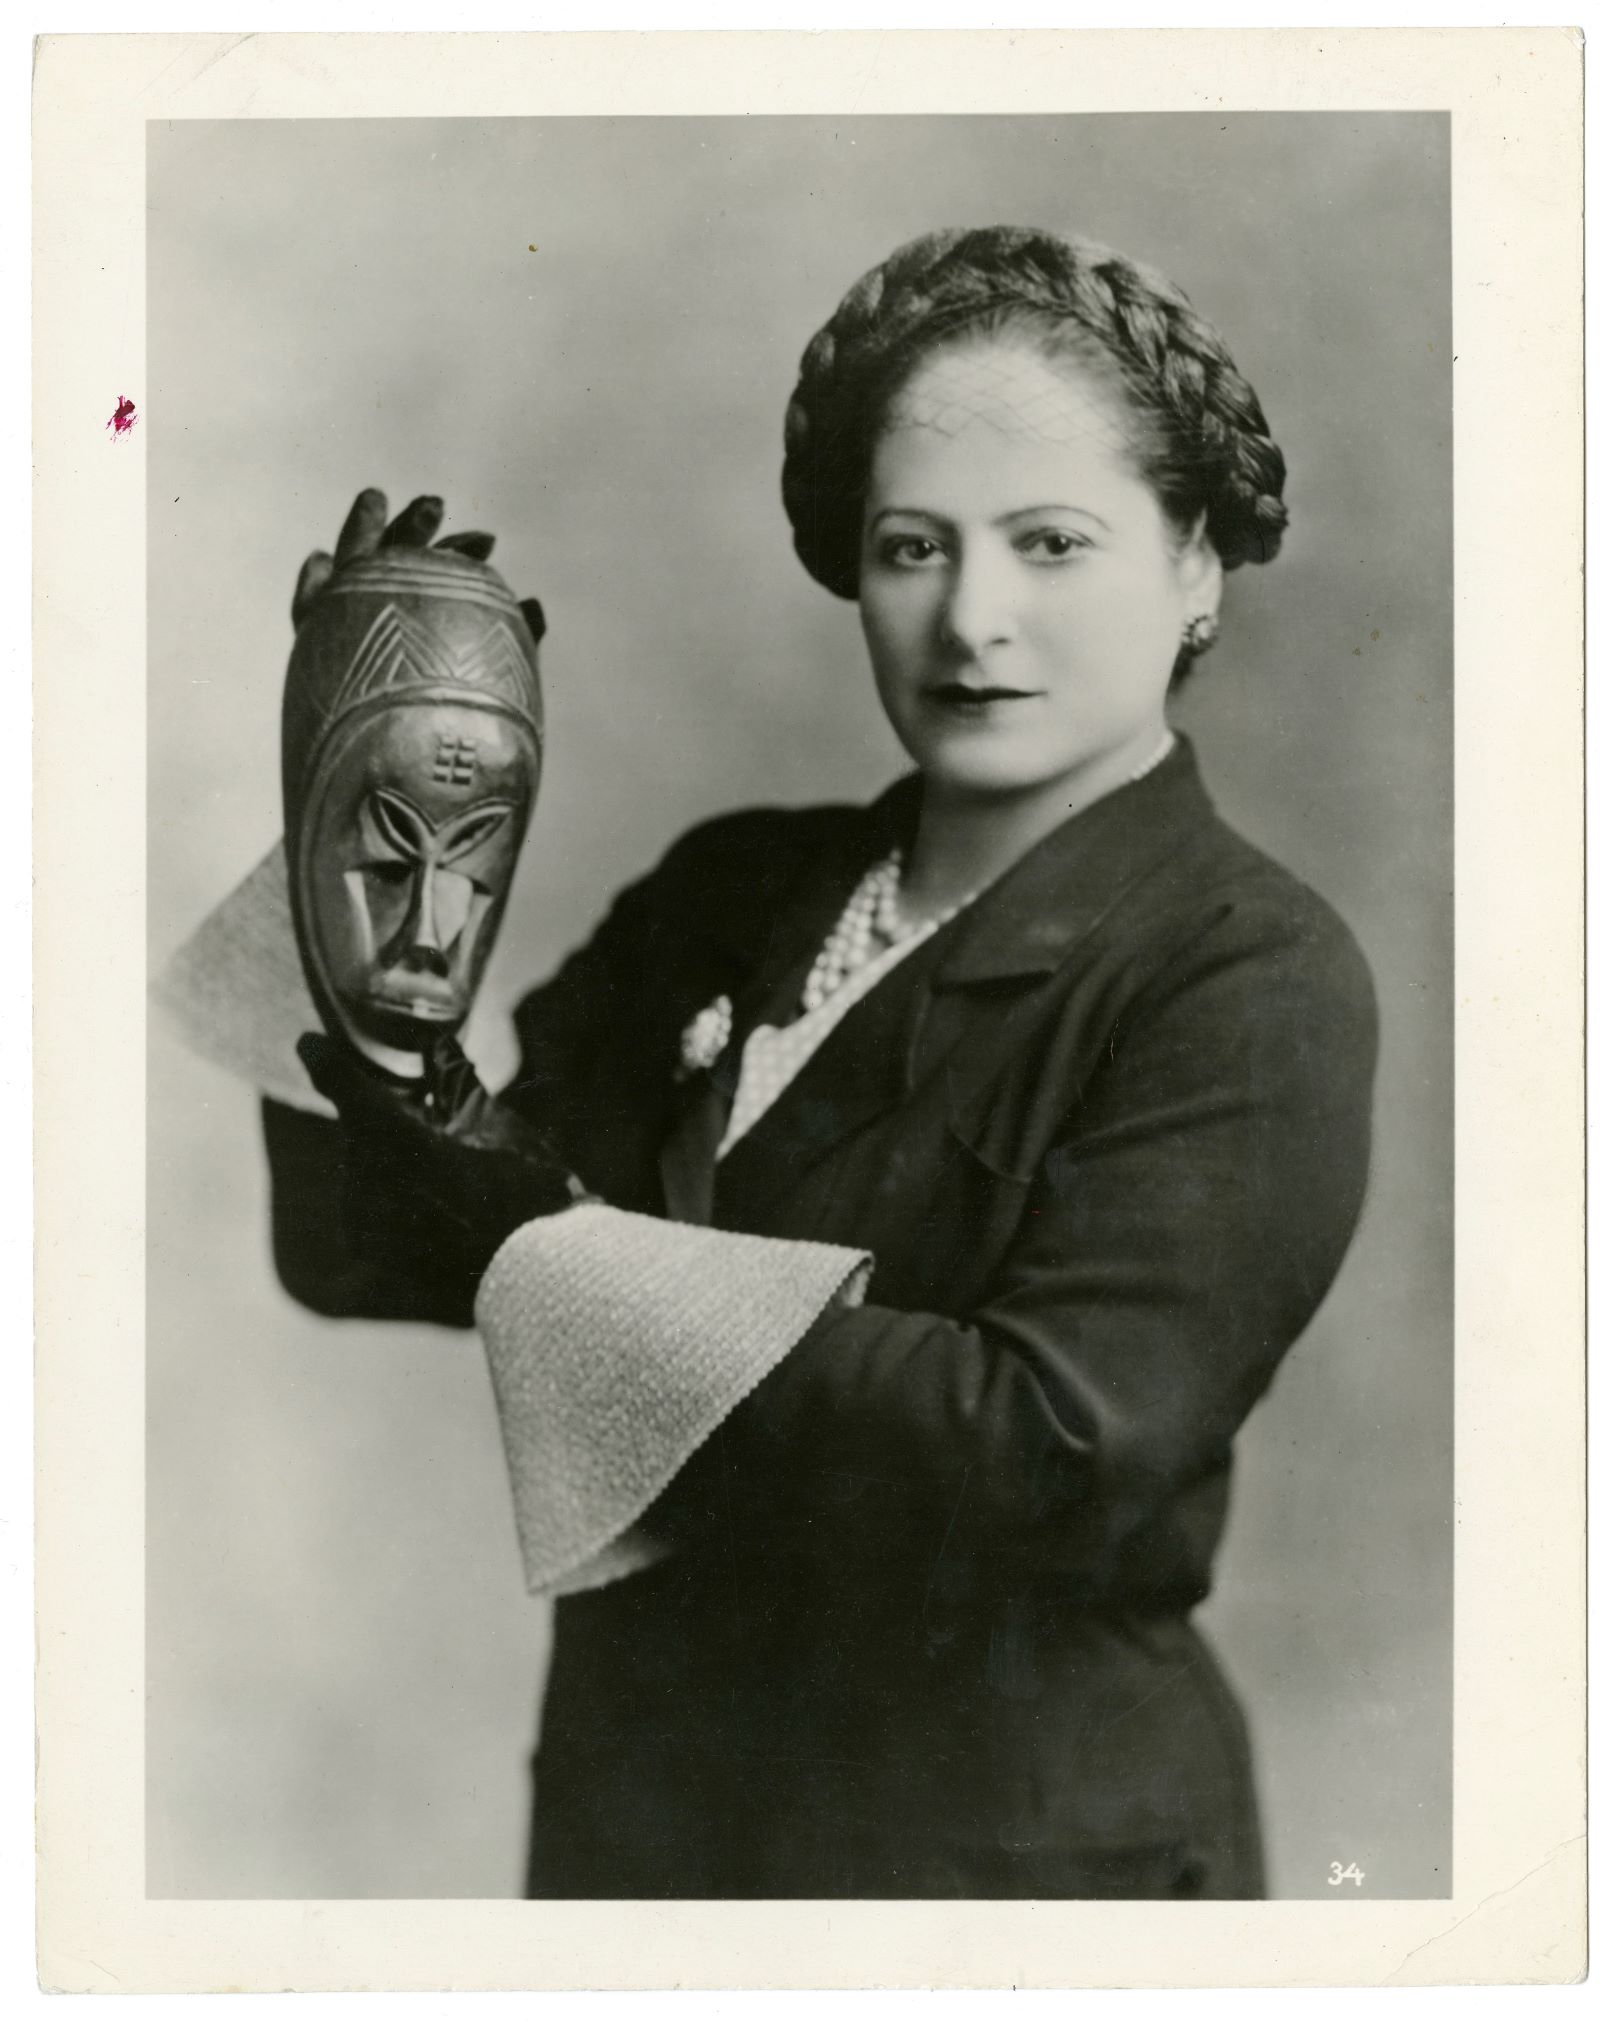 Helena Rubinstein. Kobieta z warkoczem uwiniętym wokół głowy. W dłoniach trzyma maskę.